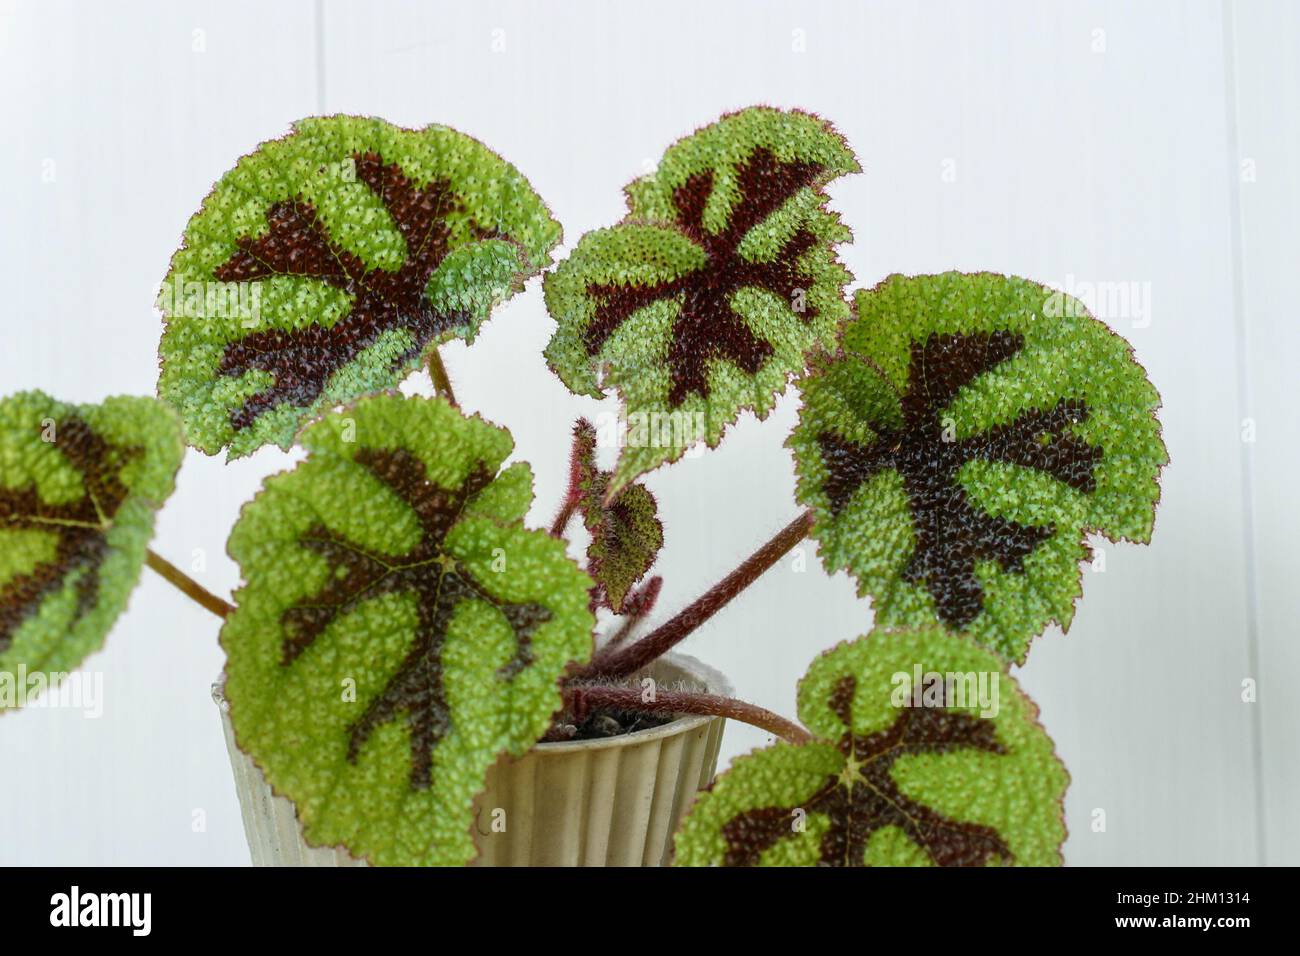 Begonia masoniana house plant leaves. Stock Photo